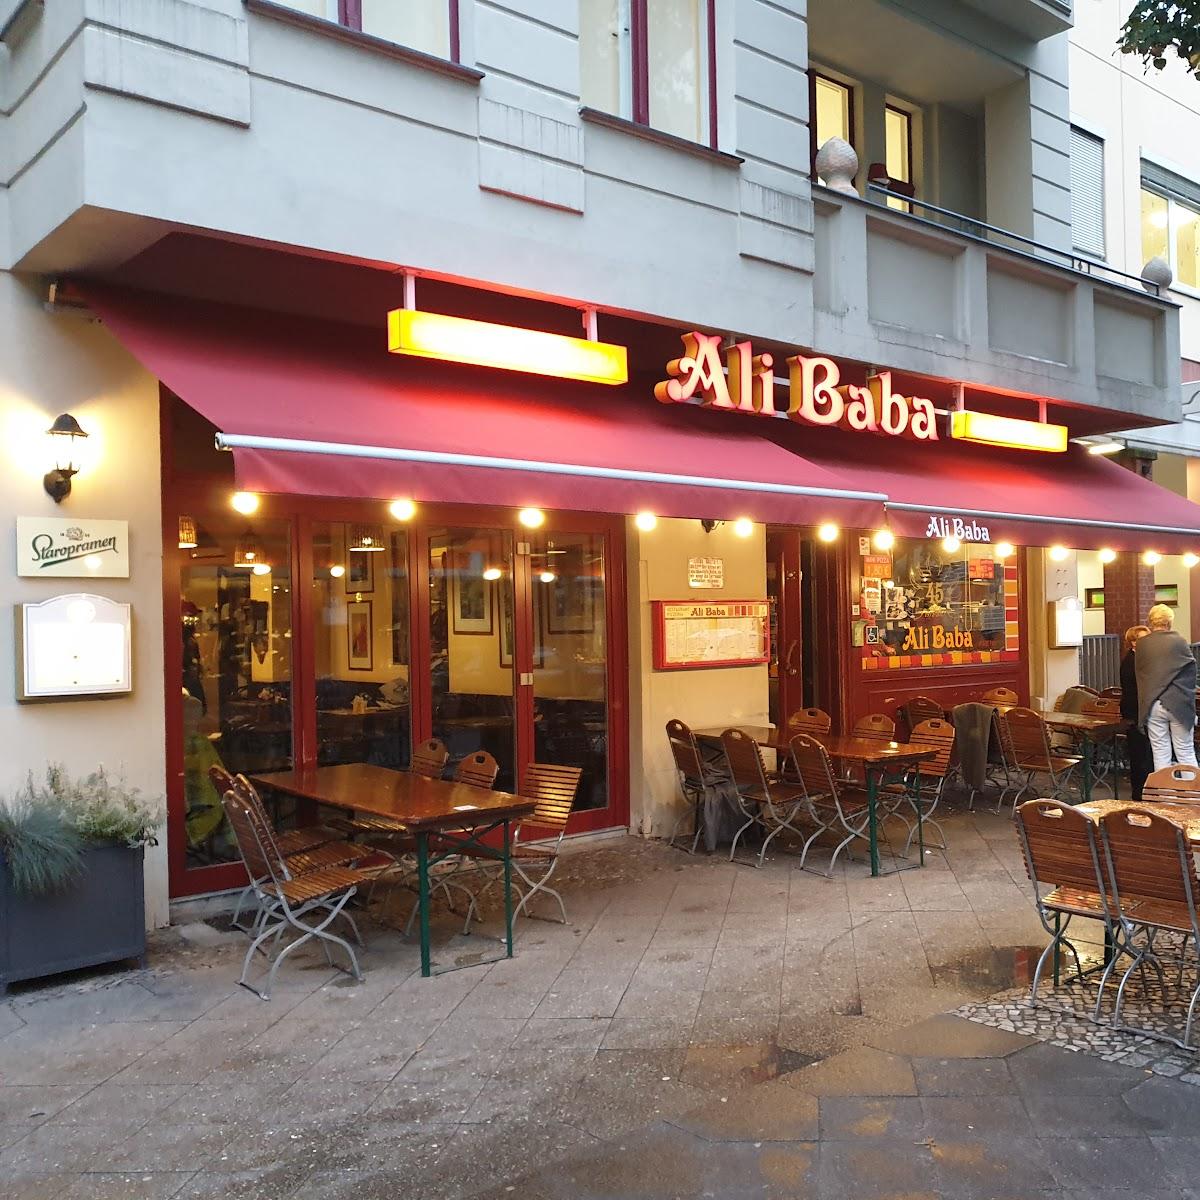 Restaurant "Ali Baba" in Berlin